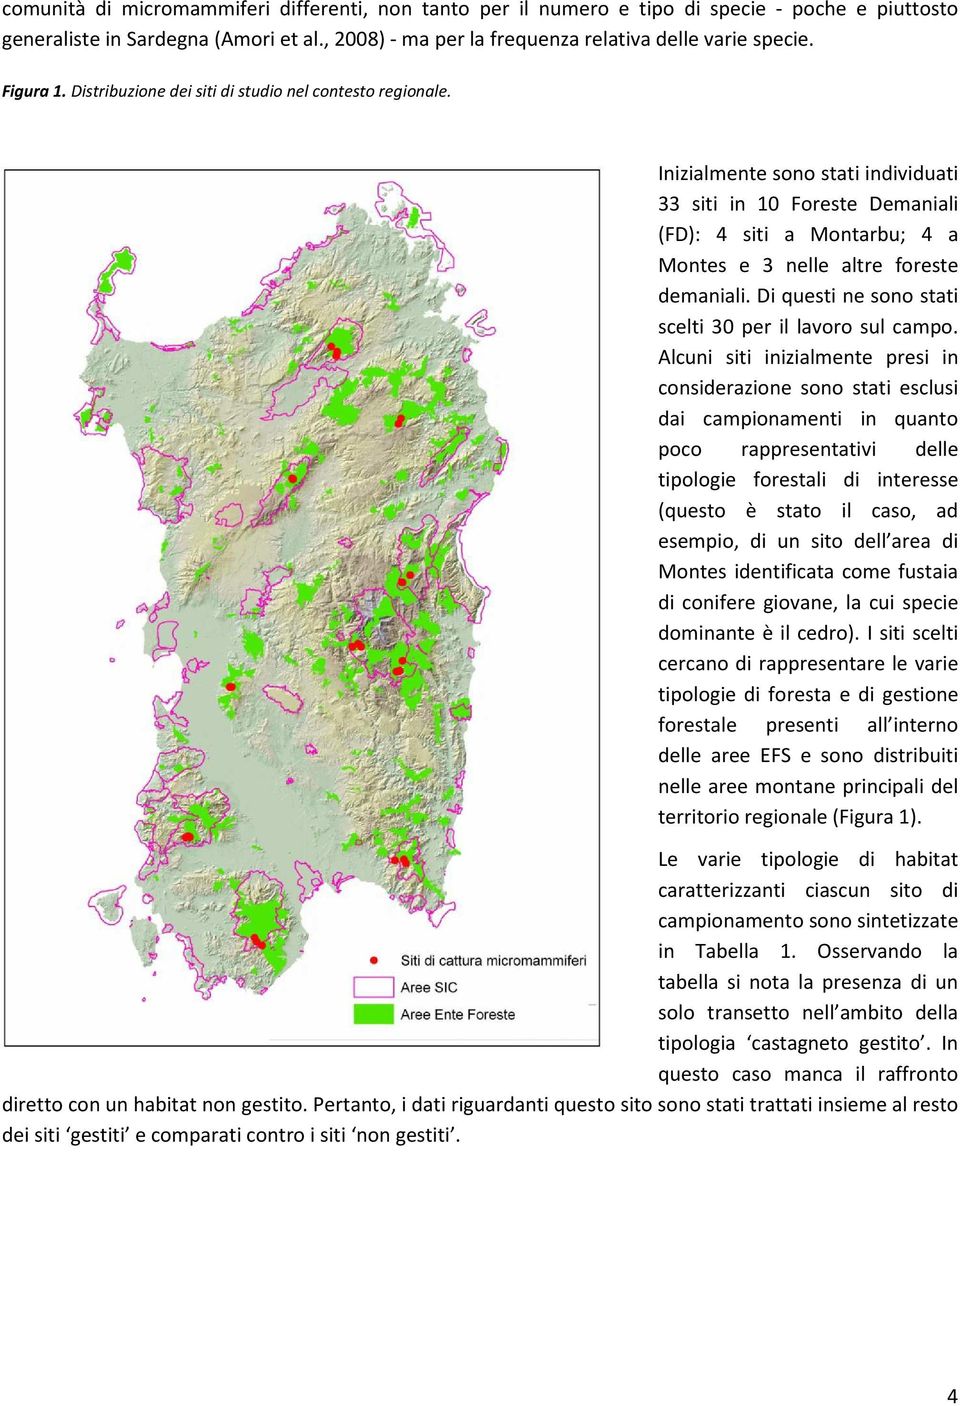 Inizialmente sono stati individuati 33 siti in 10 Foreste Demaniali (FD): 4 siti a Montarbu; 4 a Montes e 3 nelle altre foreste demaniali. Di questi ne sono stati scelti 30 per il lavoro sul campo.